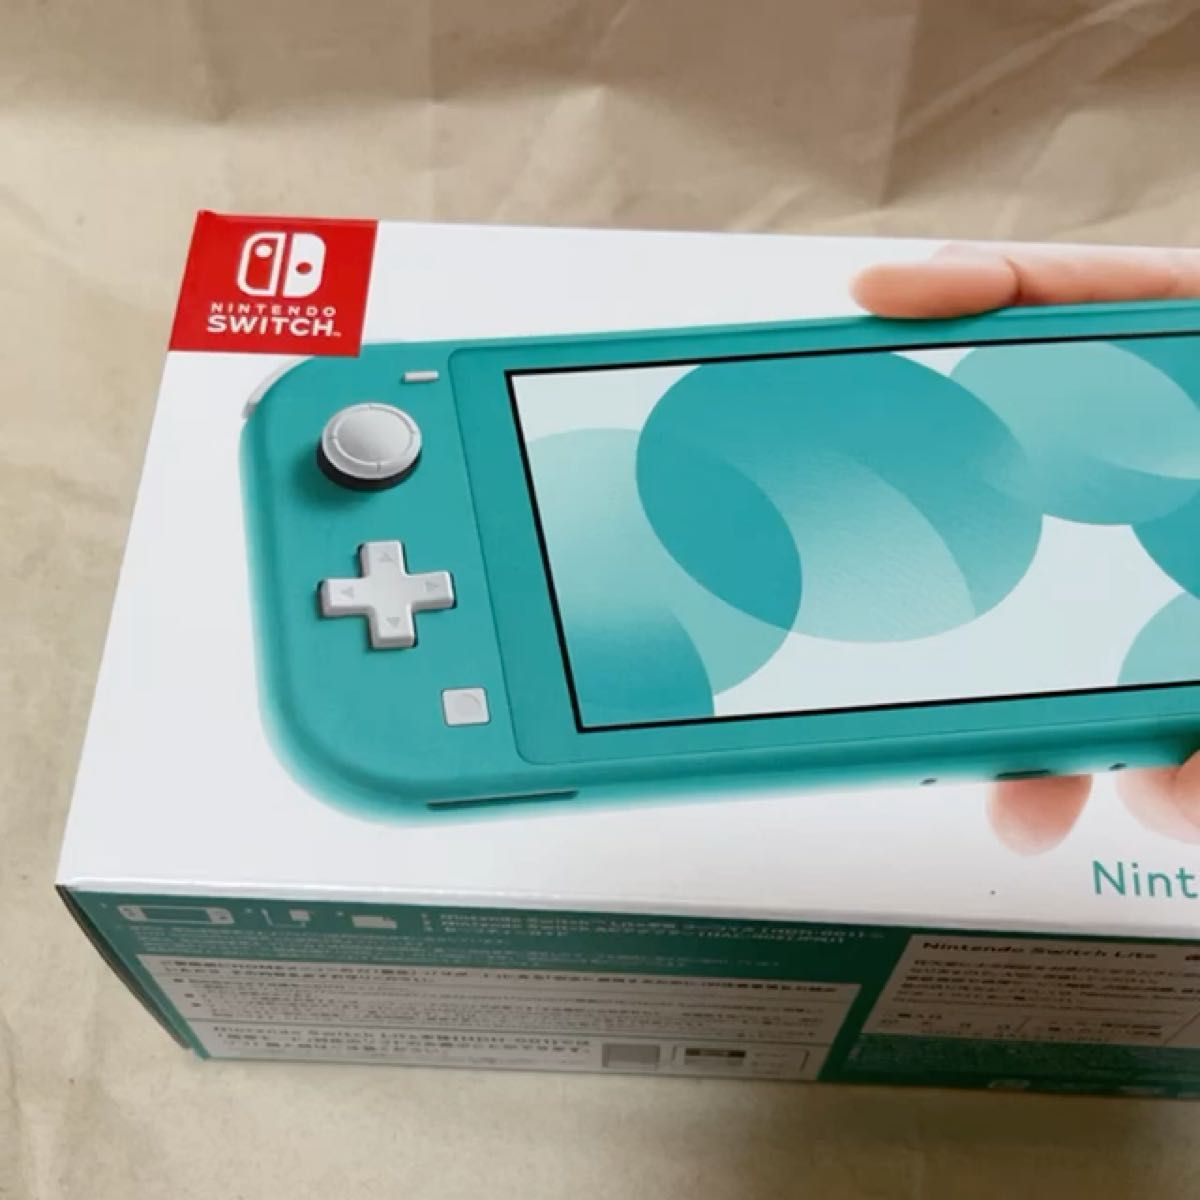 5/2購入品 新品未開封 Nintendo Switch Lite ターコイズ 店舗印無し 24